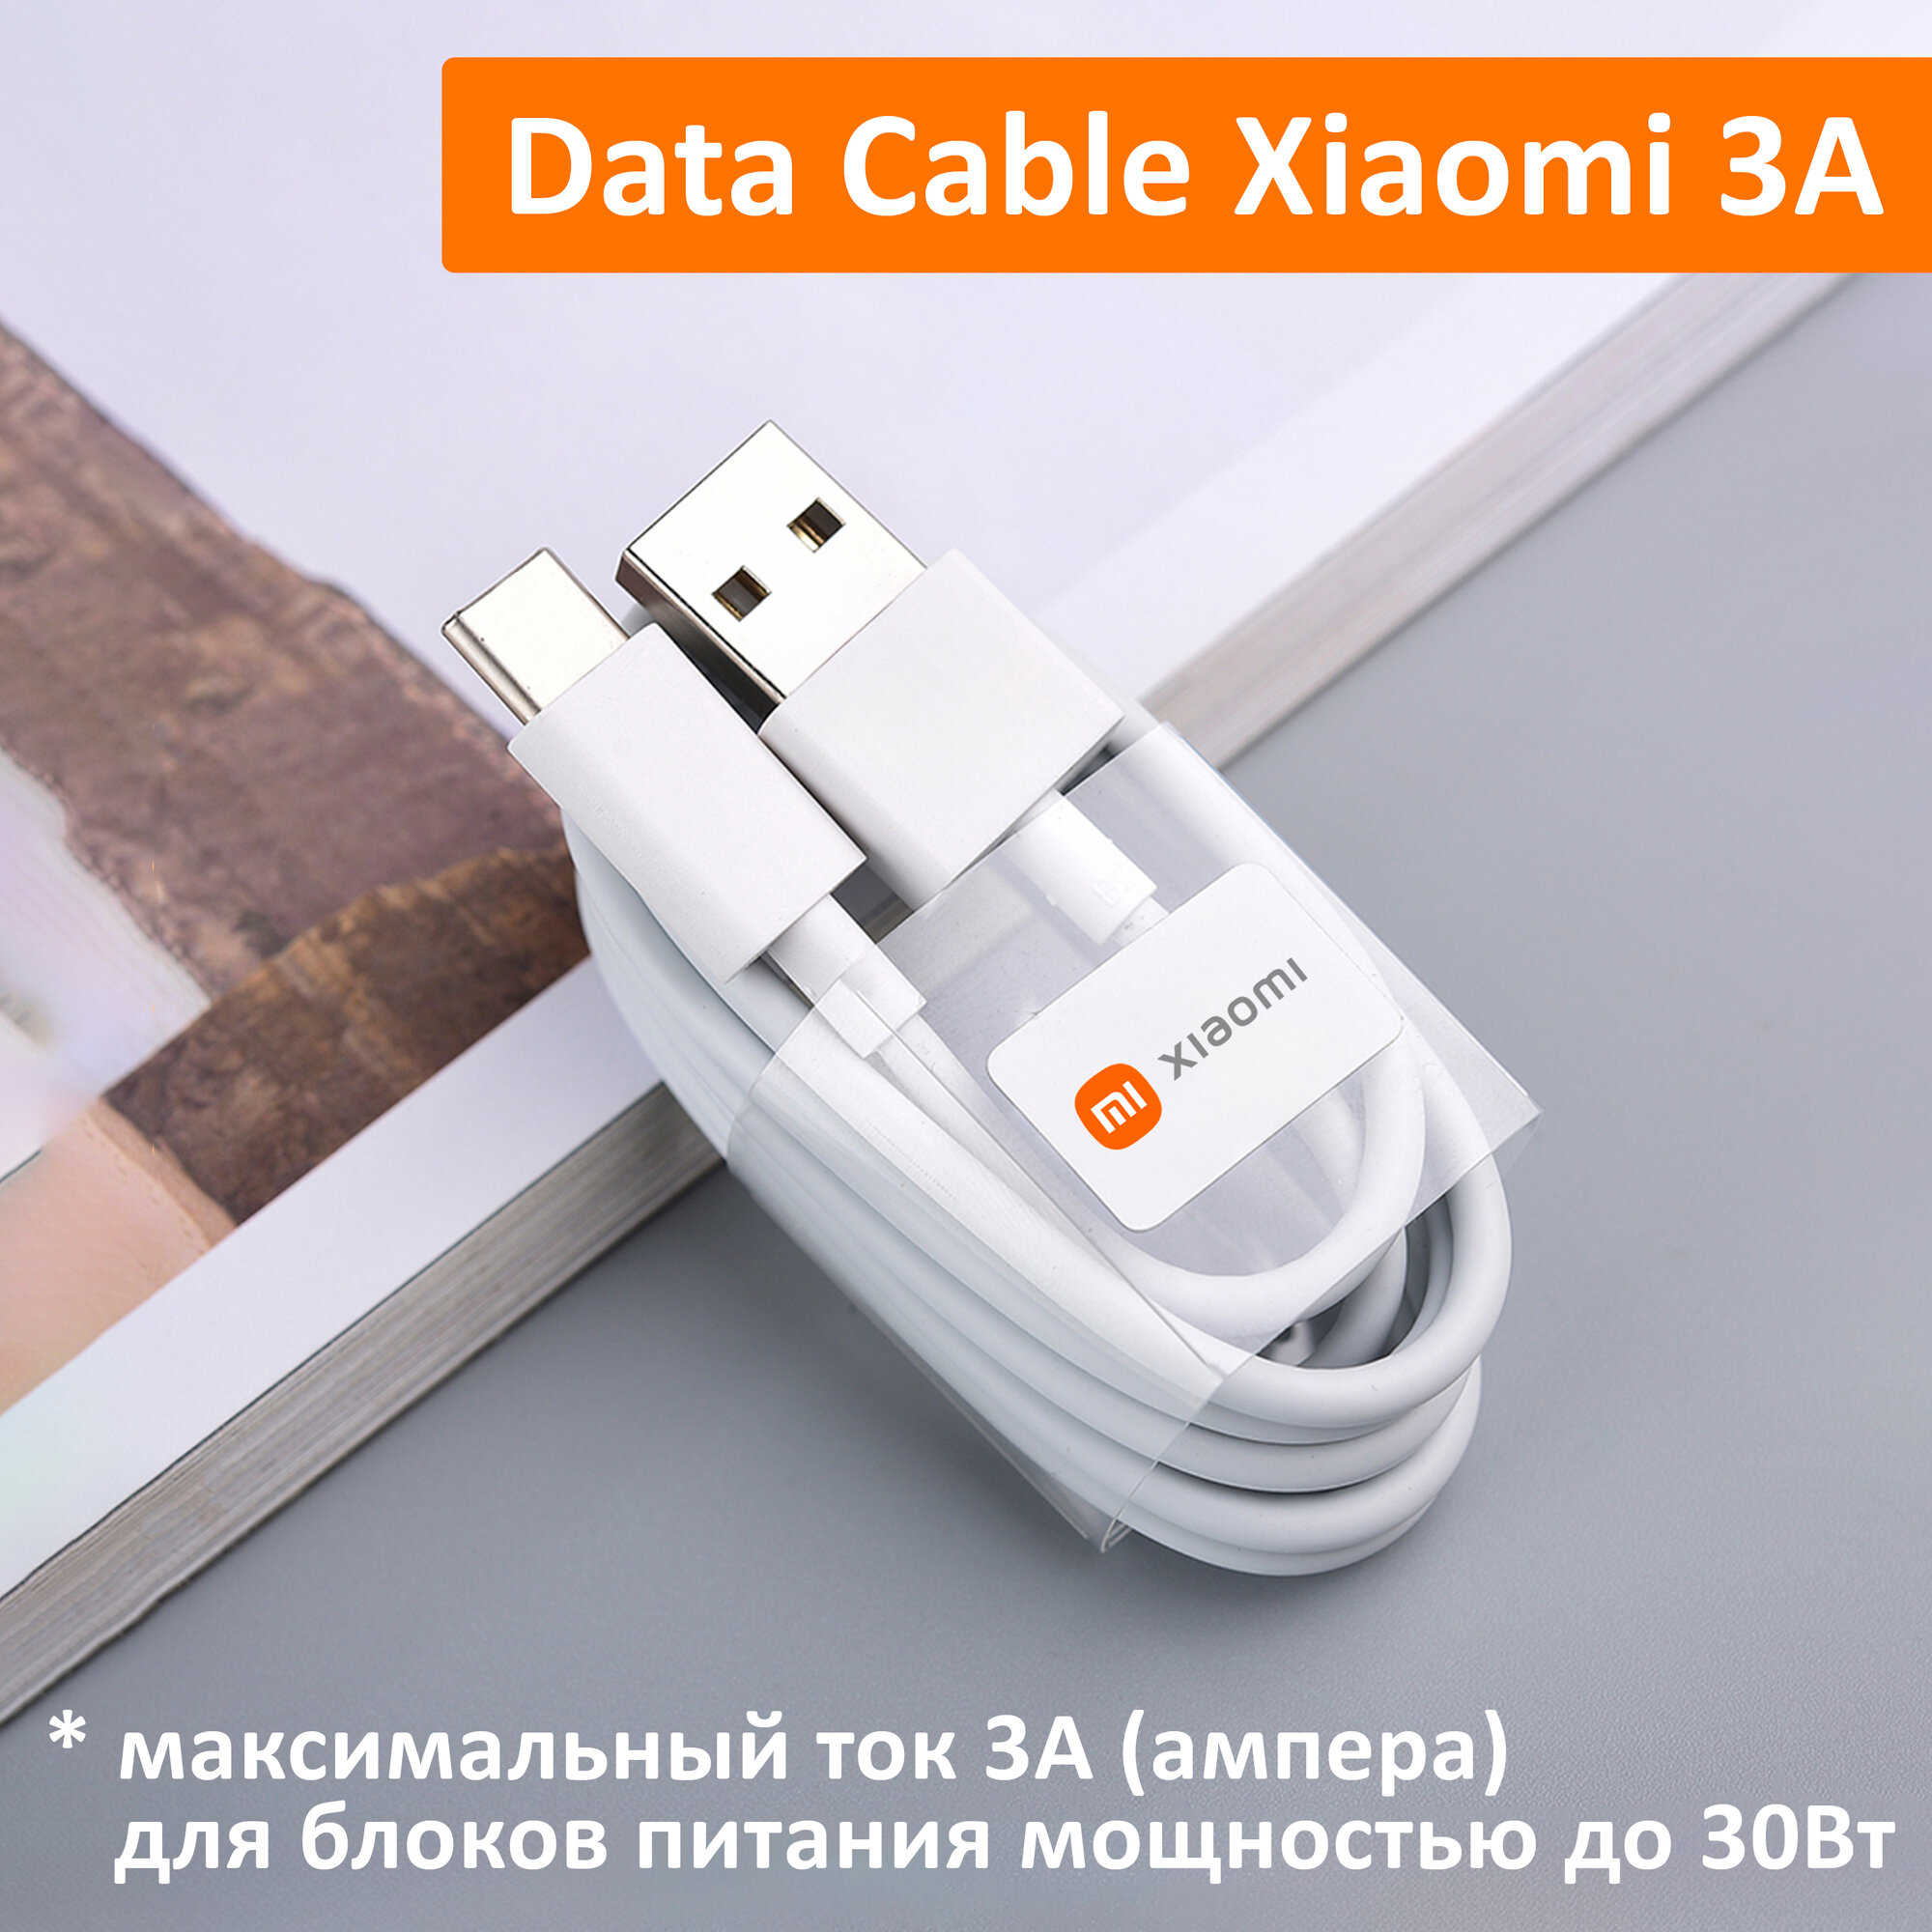 Кабель для быстрой зарядки телефонов и планшетов Xiaomi USB 3A, Quick Charge, Type-A to Type-C (BHR4422GL) 3 ампера. Белый Data Cable